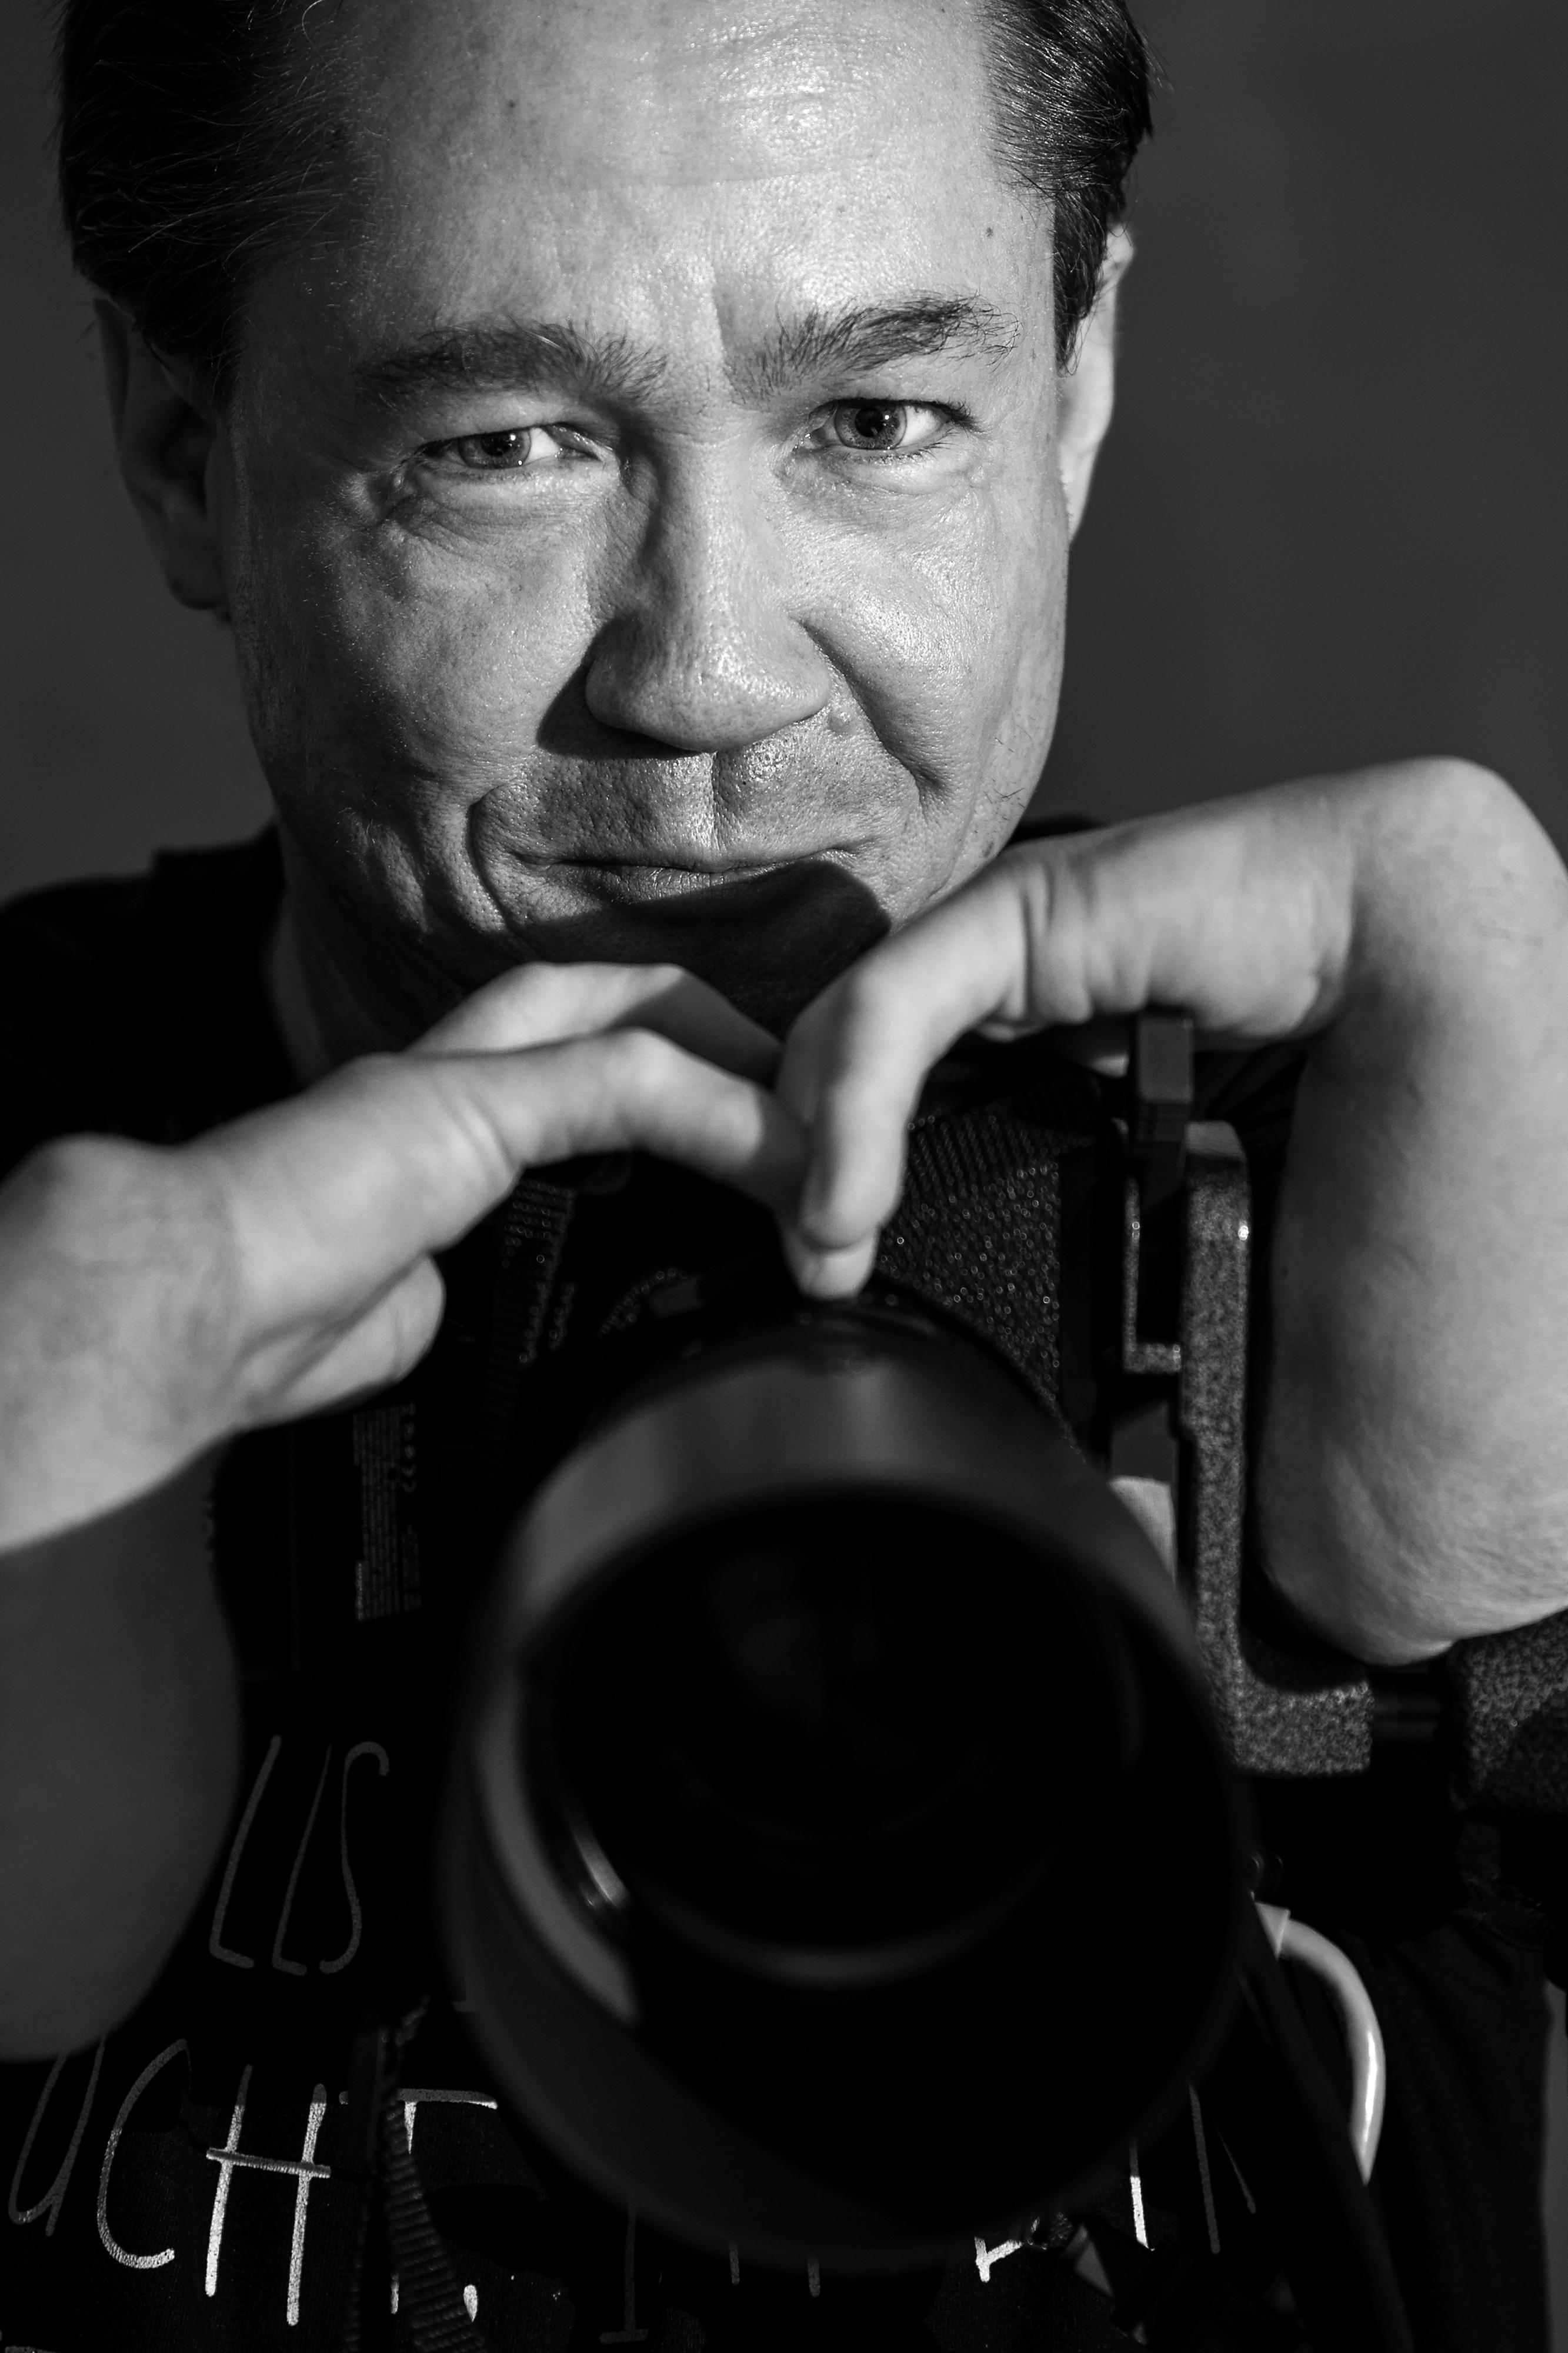 Ein contergangeschädigter Fotograf - er hält seine Kamera in den Händen.